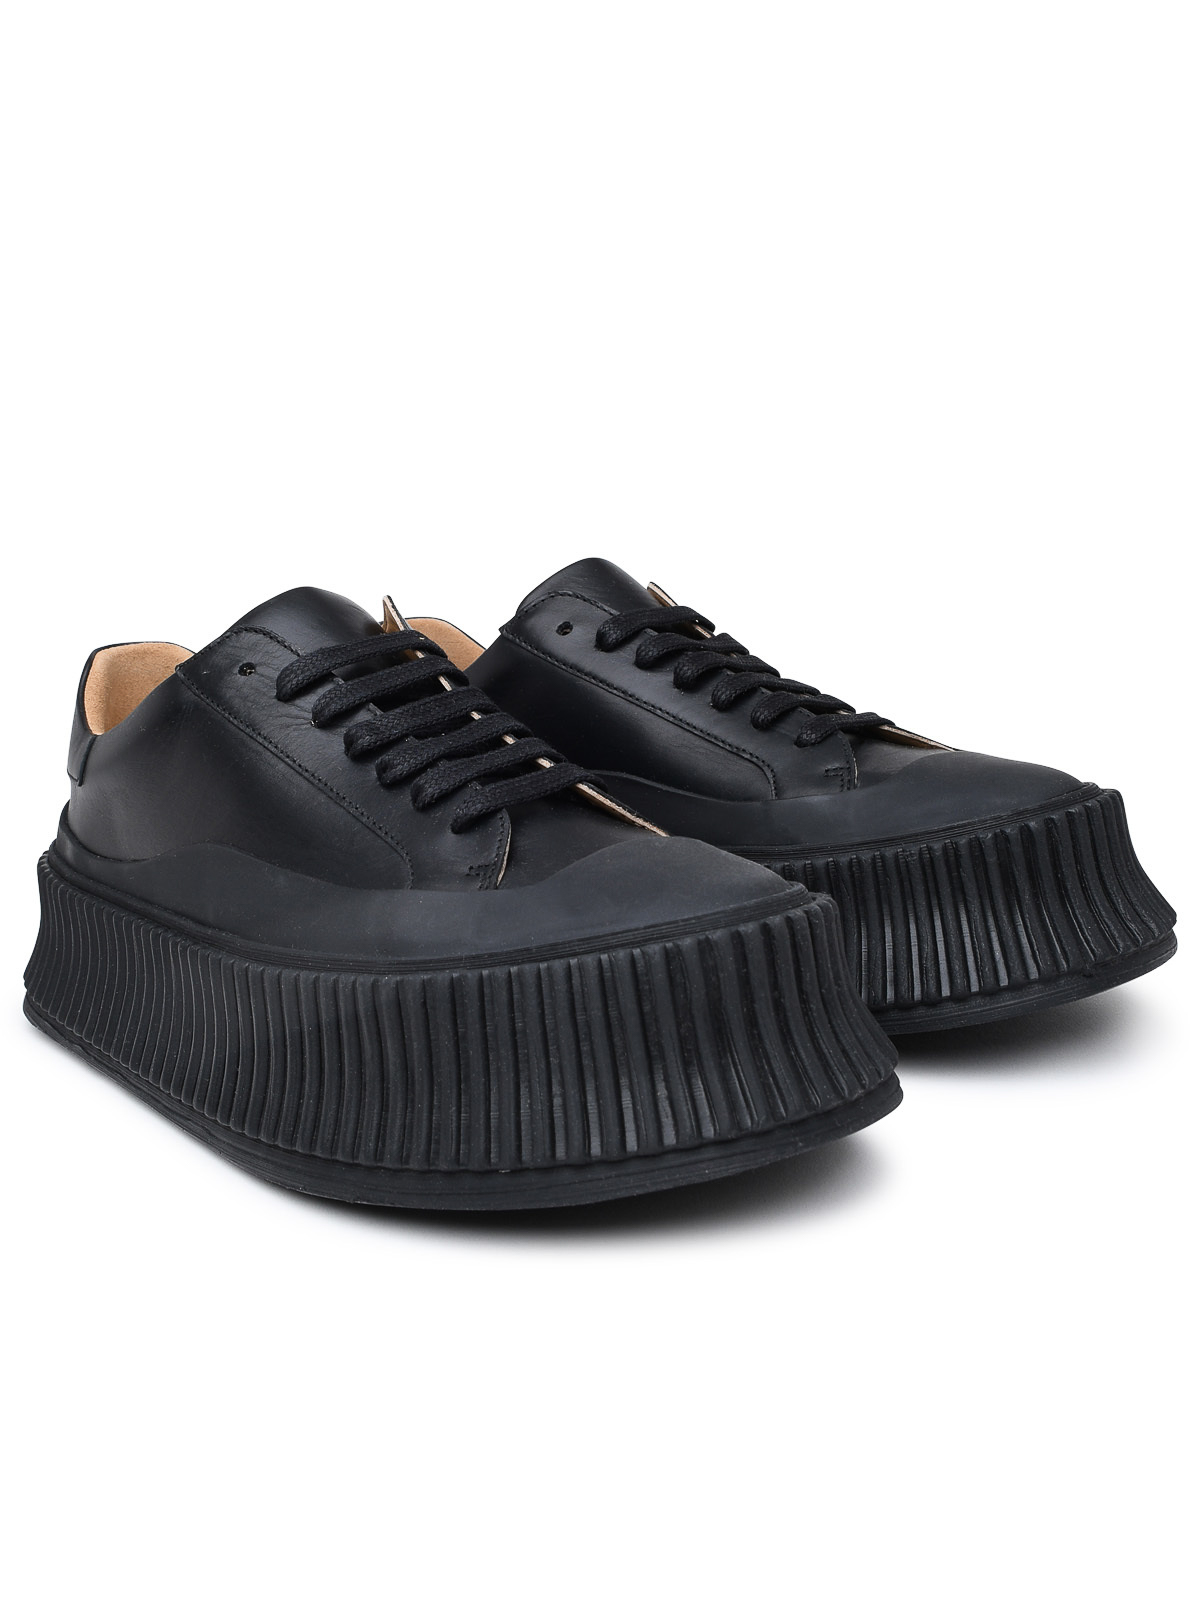 JIL SANDER - Leather Sneaker